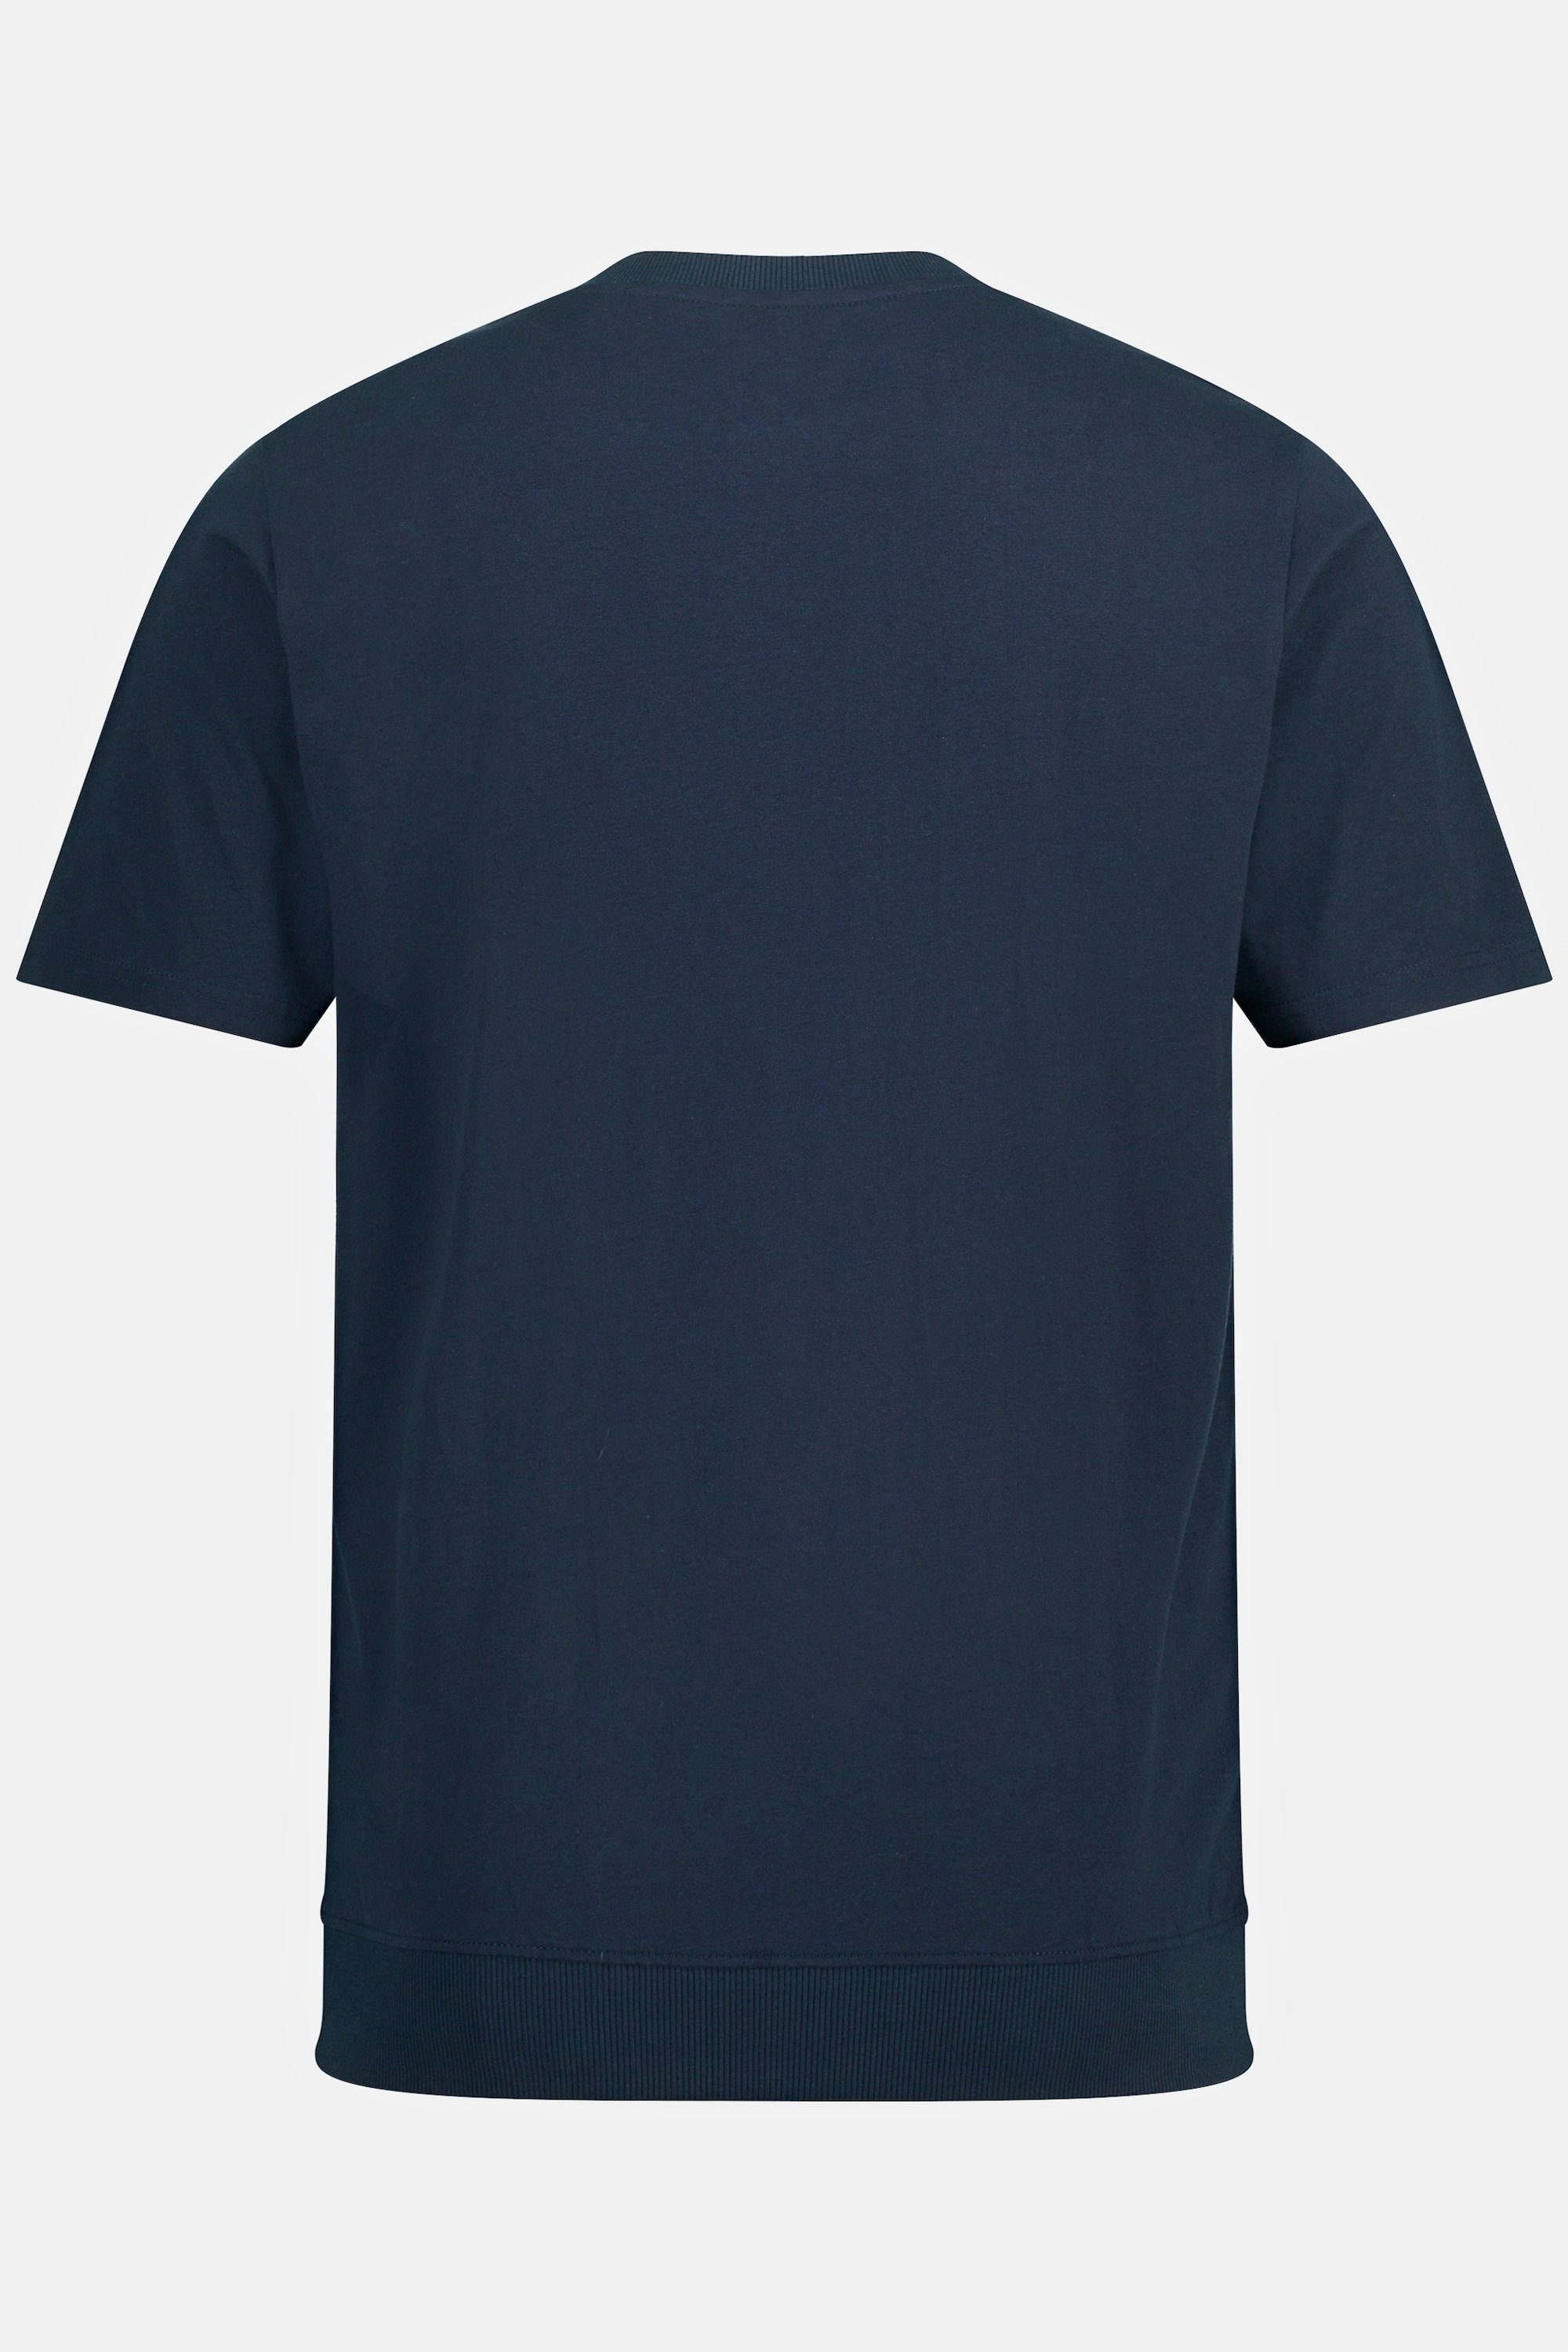 Rundhals 8 bis Halbarm XL navy JP1880 blau T-Shirt Bauchfit Henley